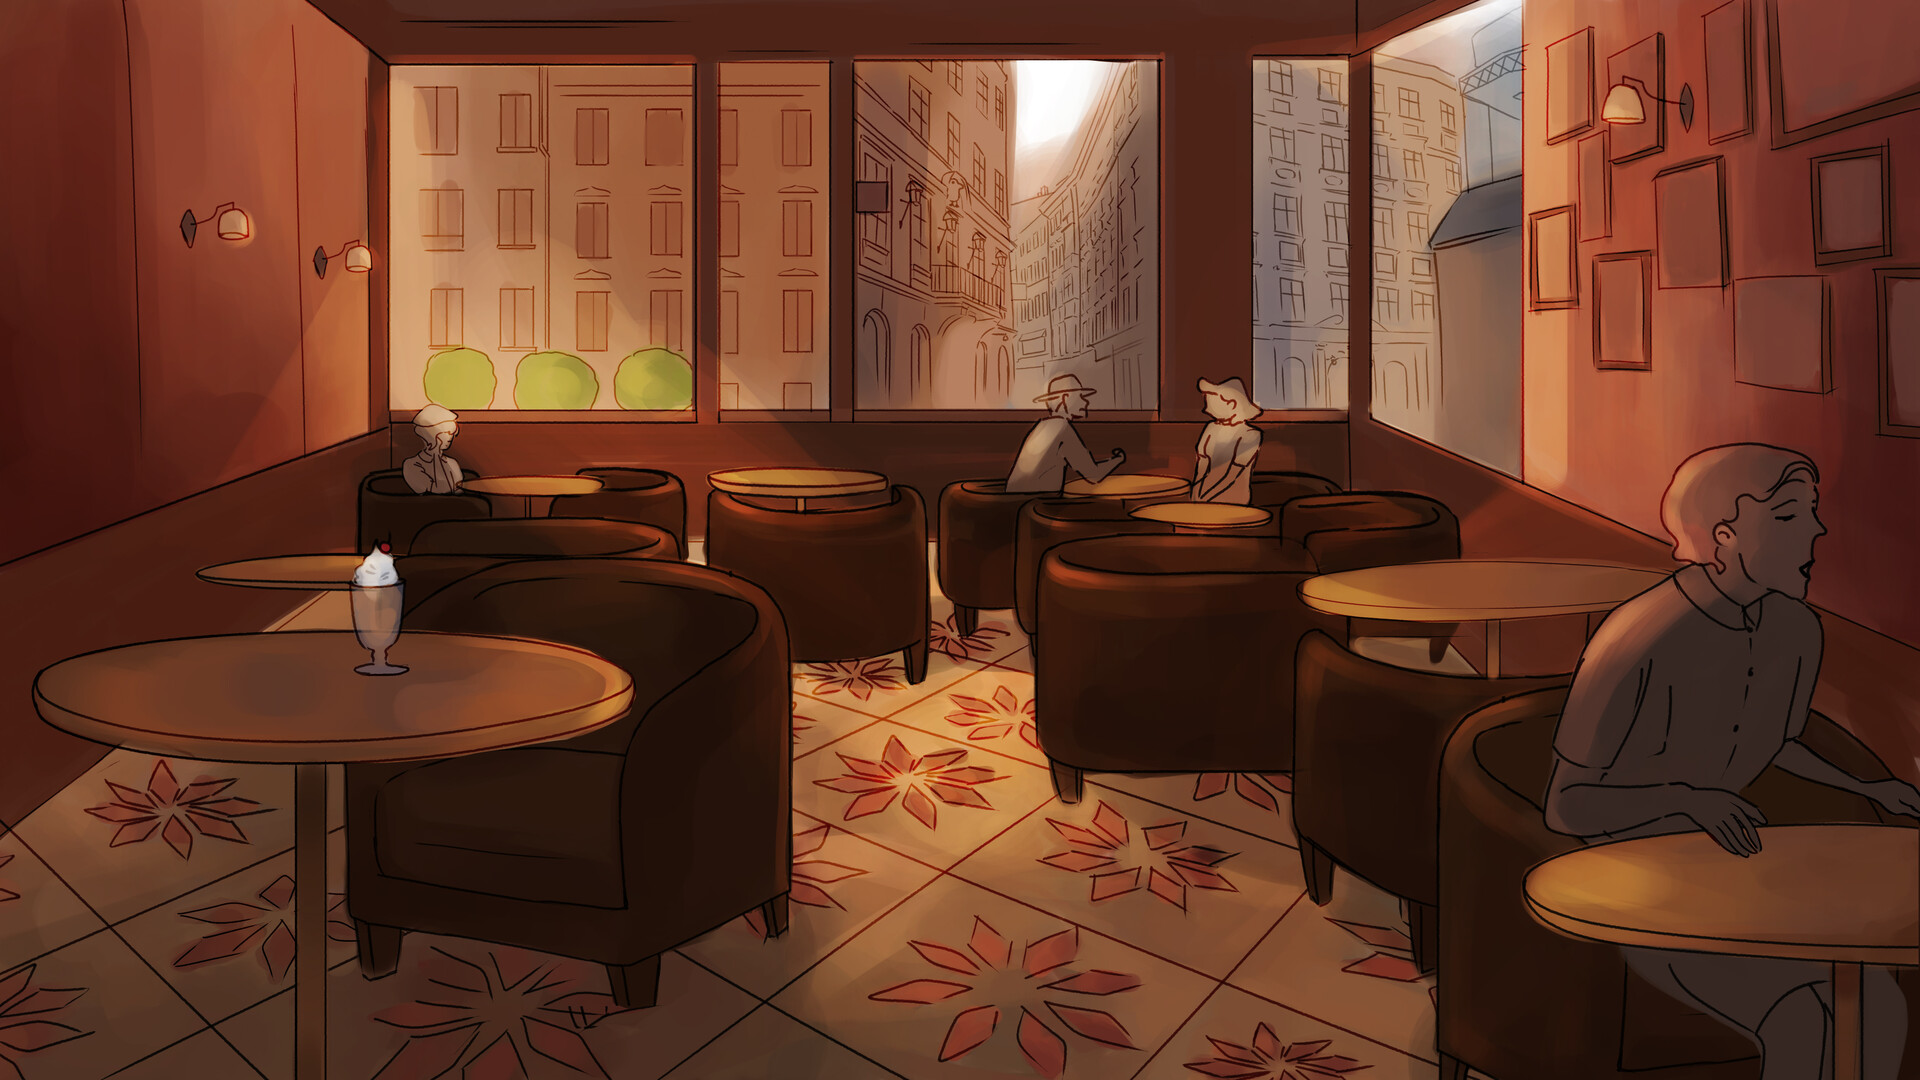 ArtStation - Cafe 1940: Background